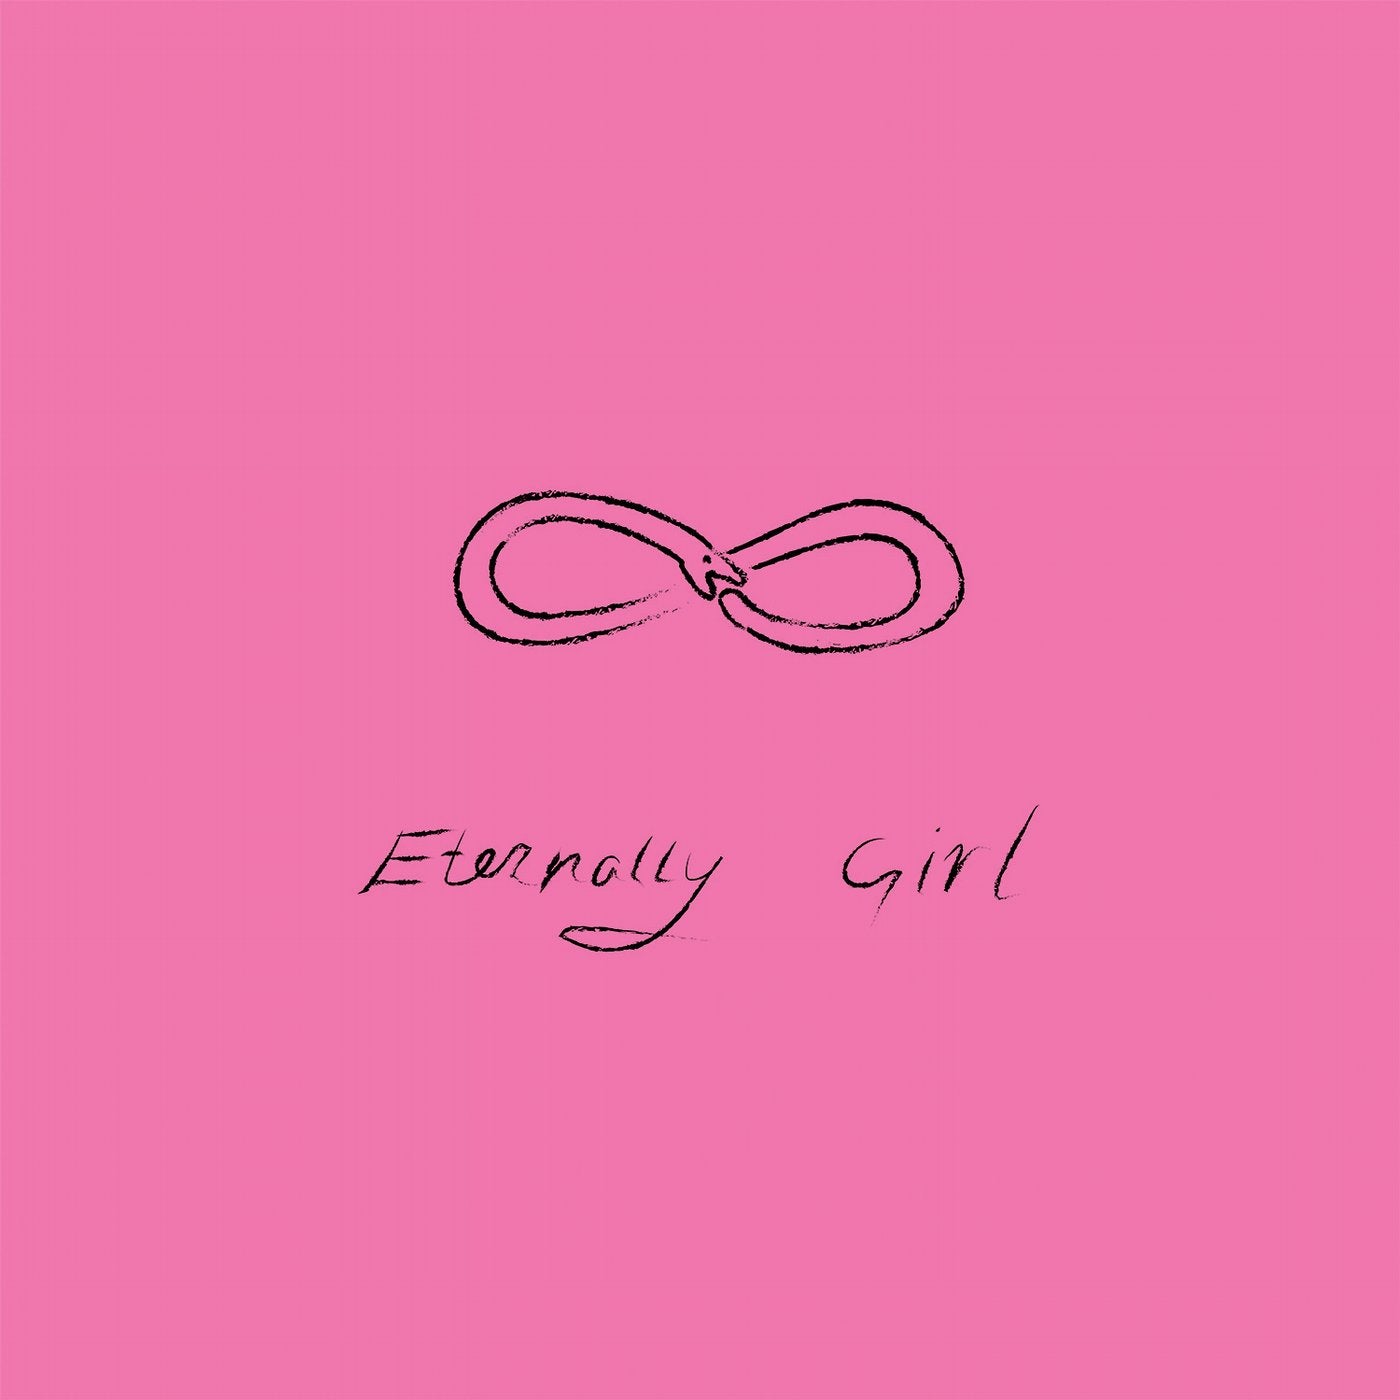 Eternally Girl